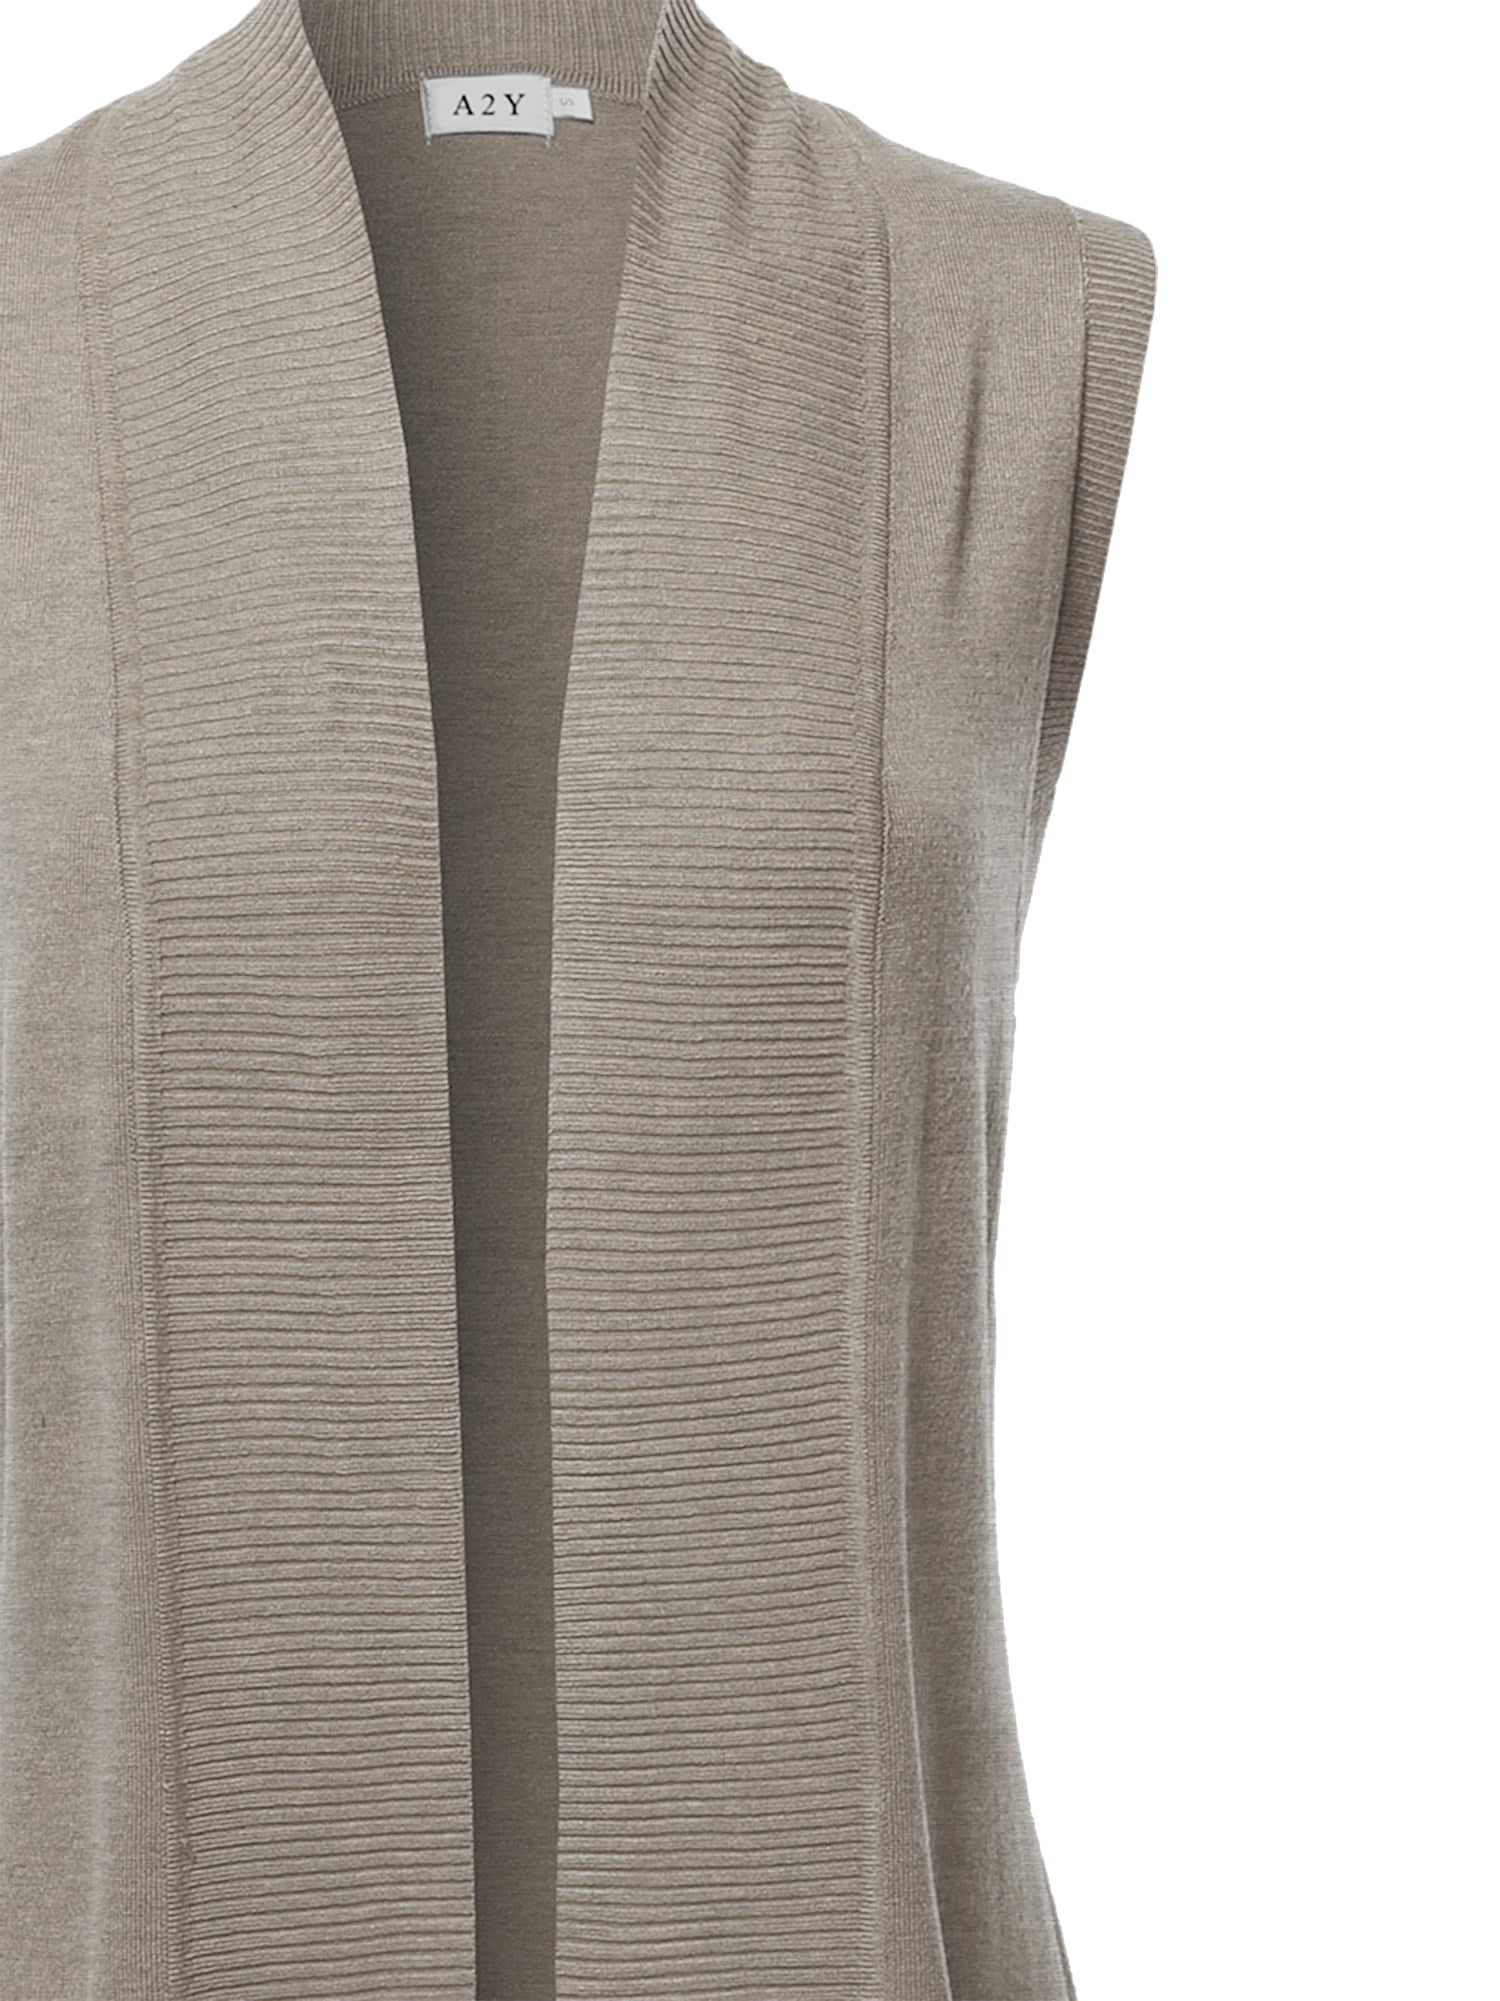 A2Y Women's Open Front Long Sleeveless Draped Side Pockets Vest Knit Sweater  Camel S - Walmart.com